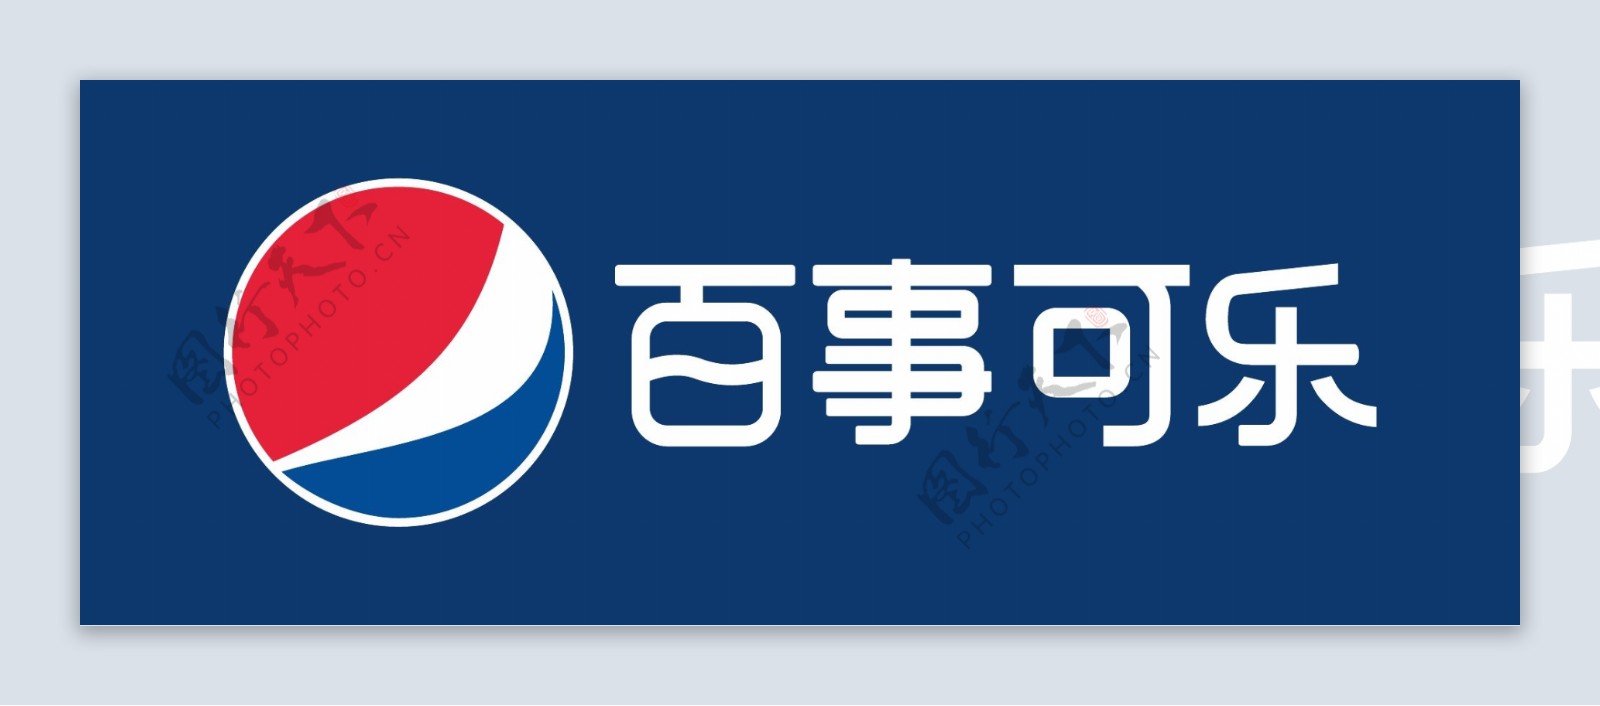 百事可乐logo